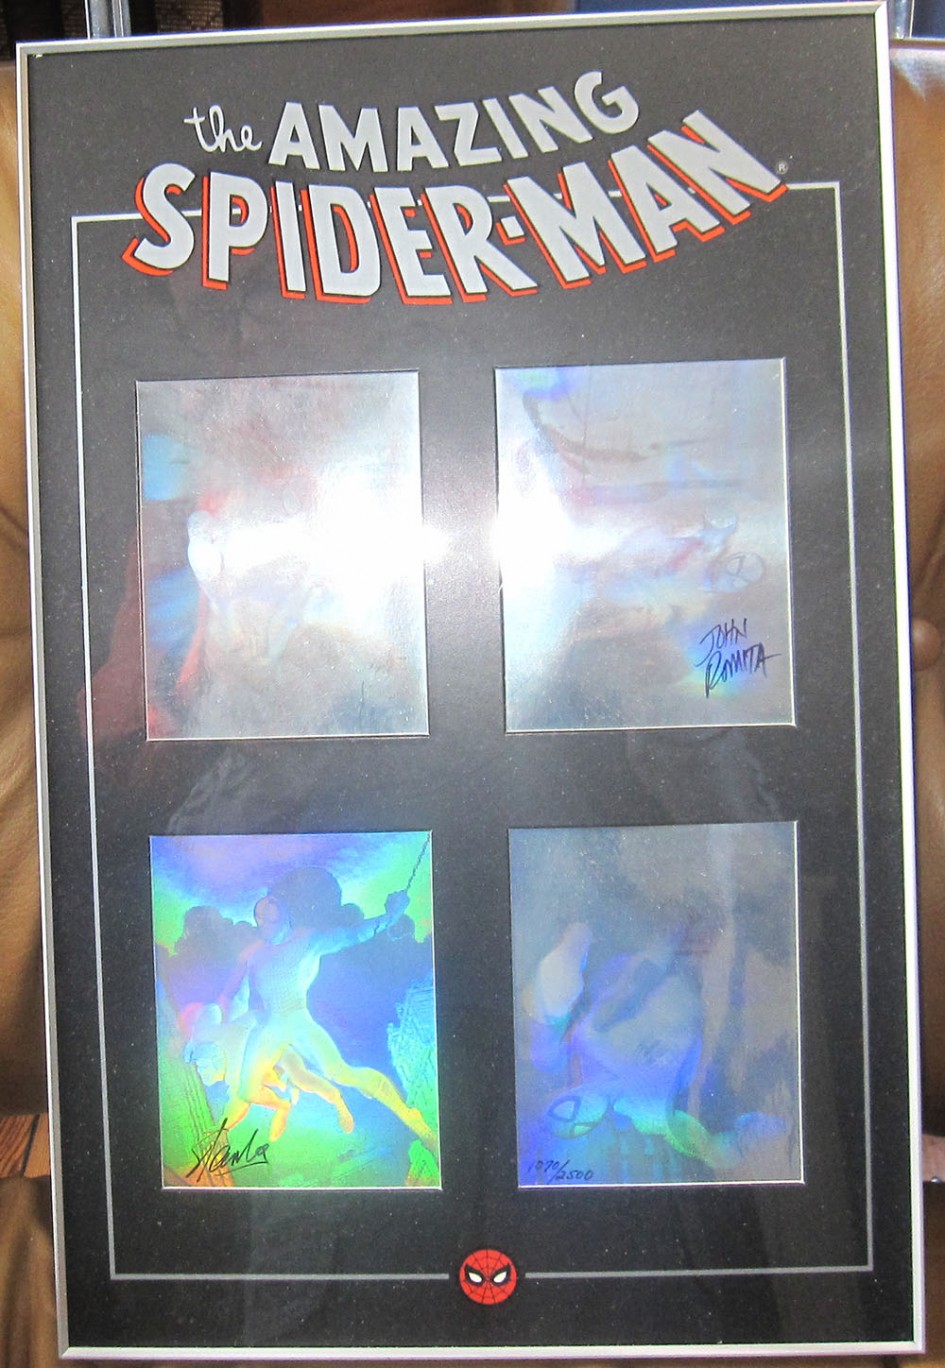 Signed Spider-Man Holograms